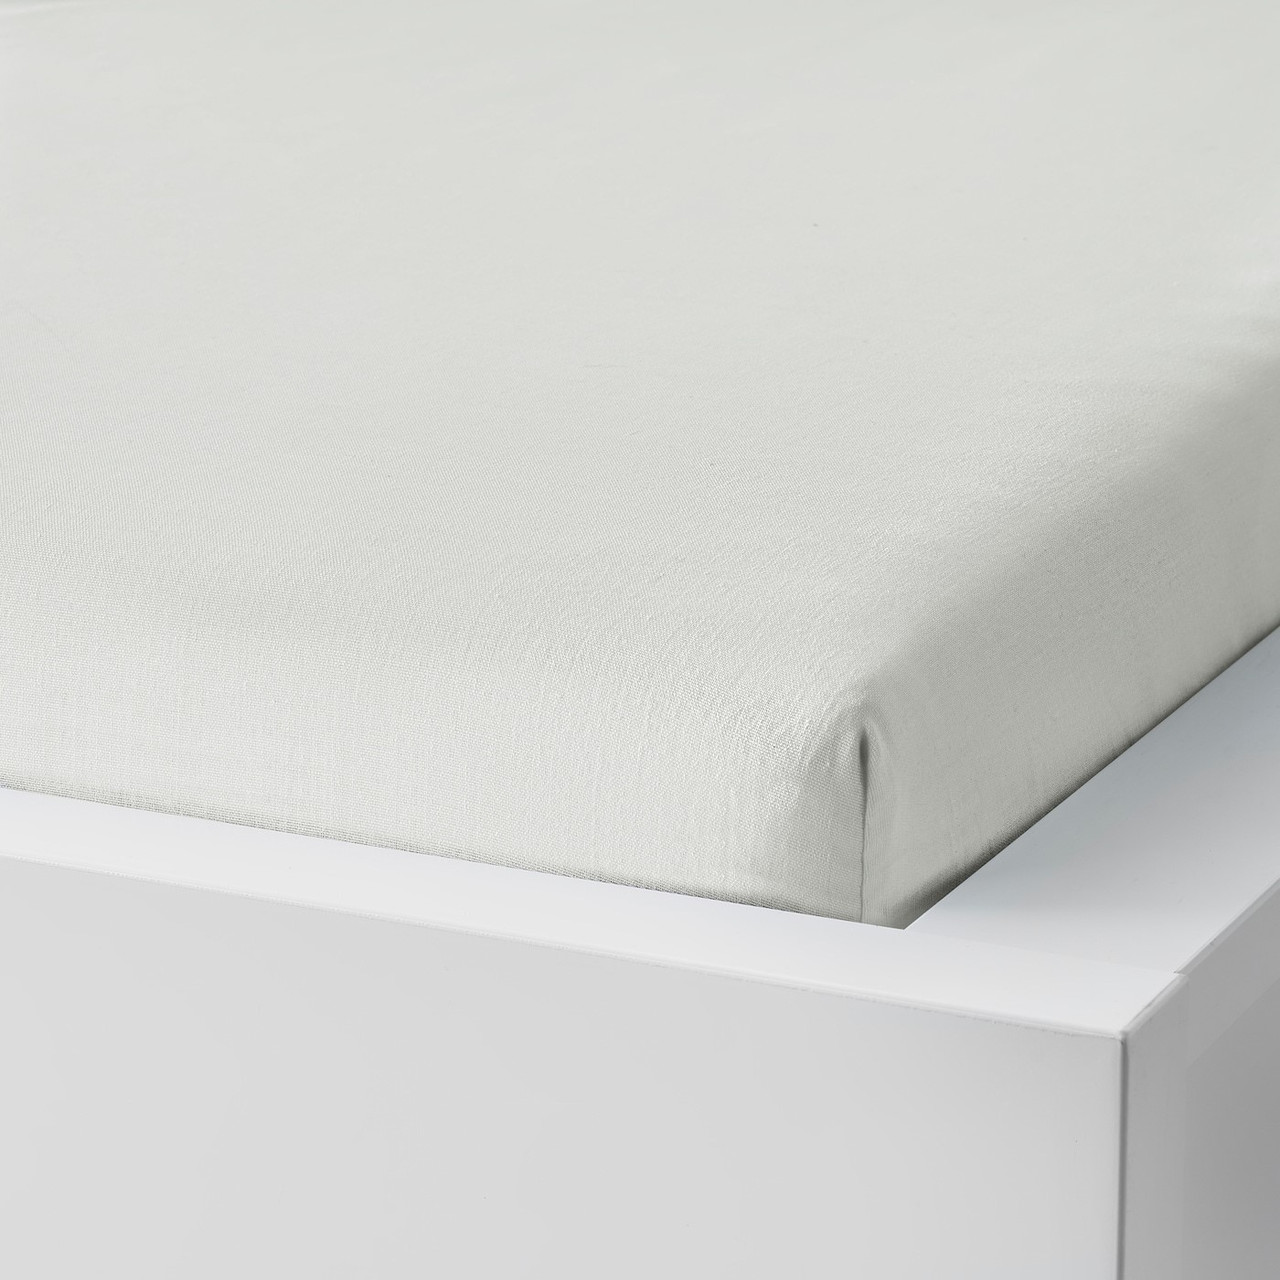 Простыня натяжная ТАГГВАЛЛЬМО белый 90x200 см ИКЕА, IKEA